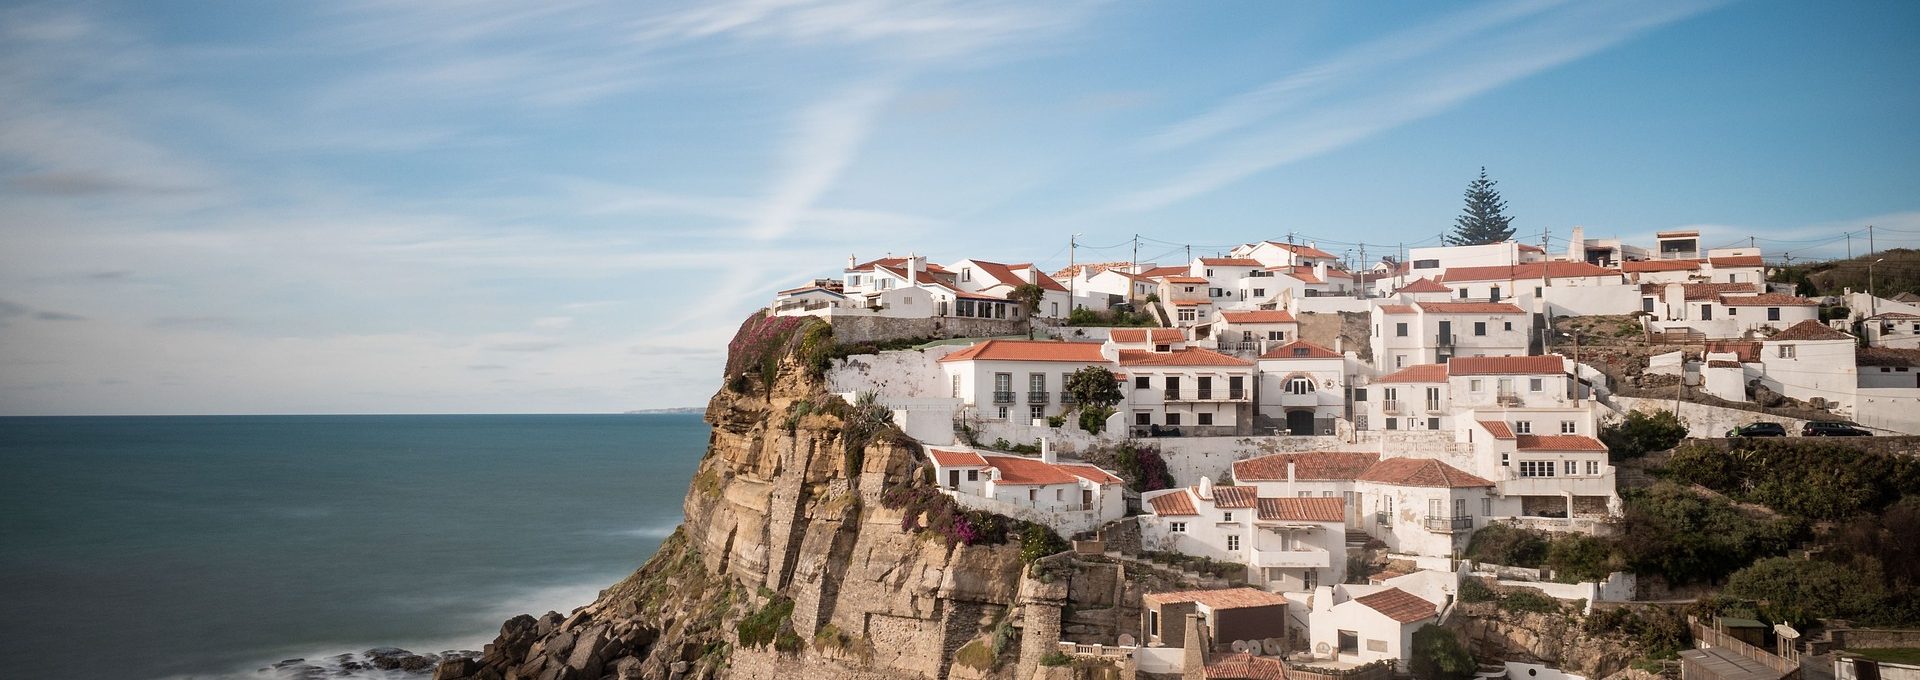 Vista da vila de Sintra em Portugal